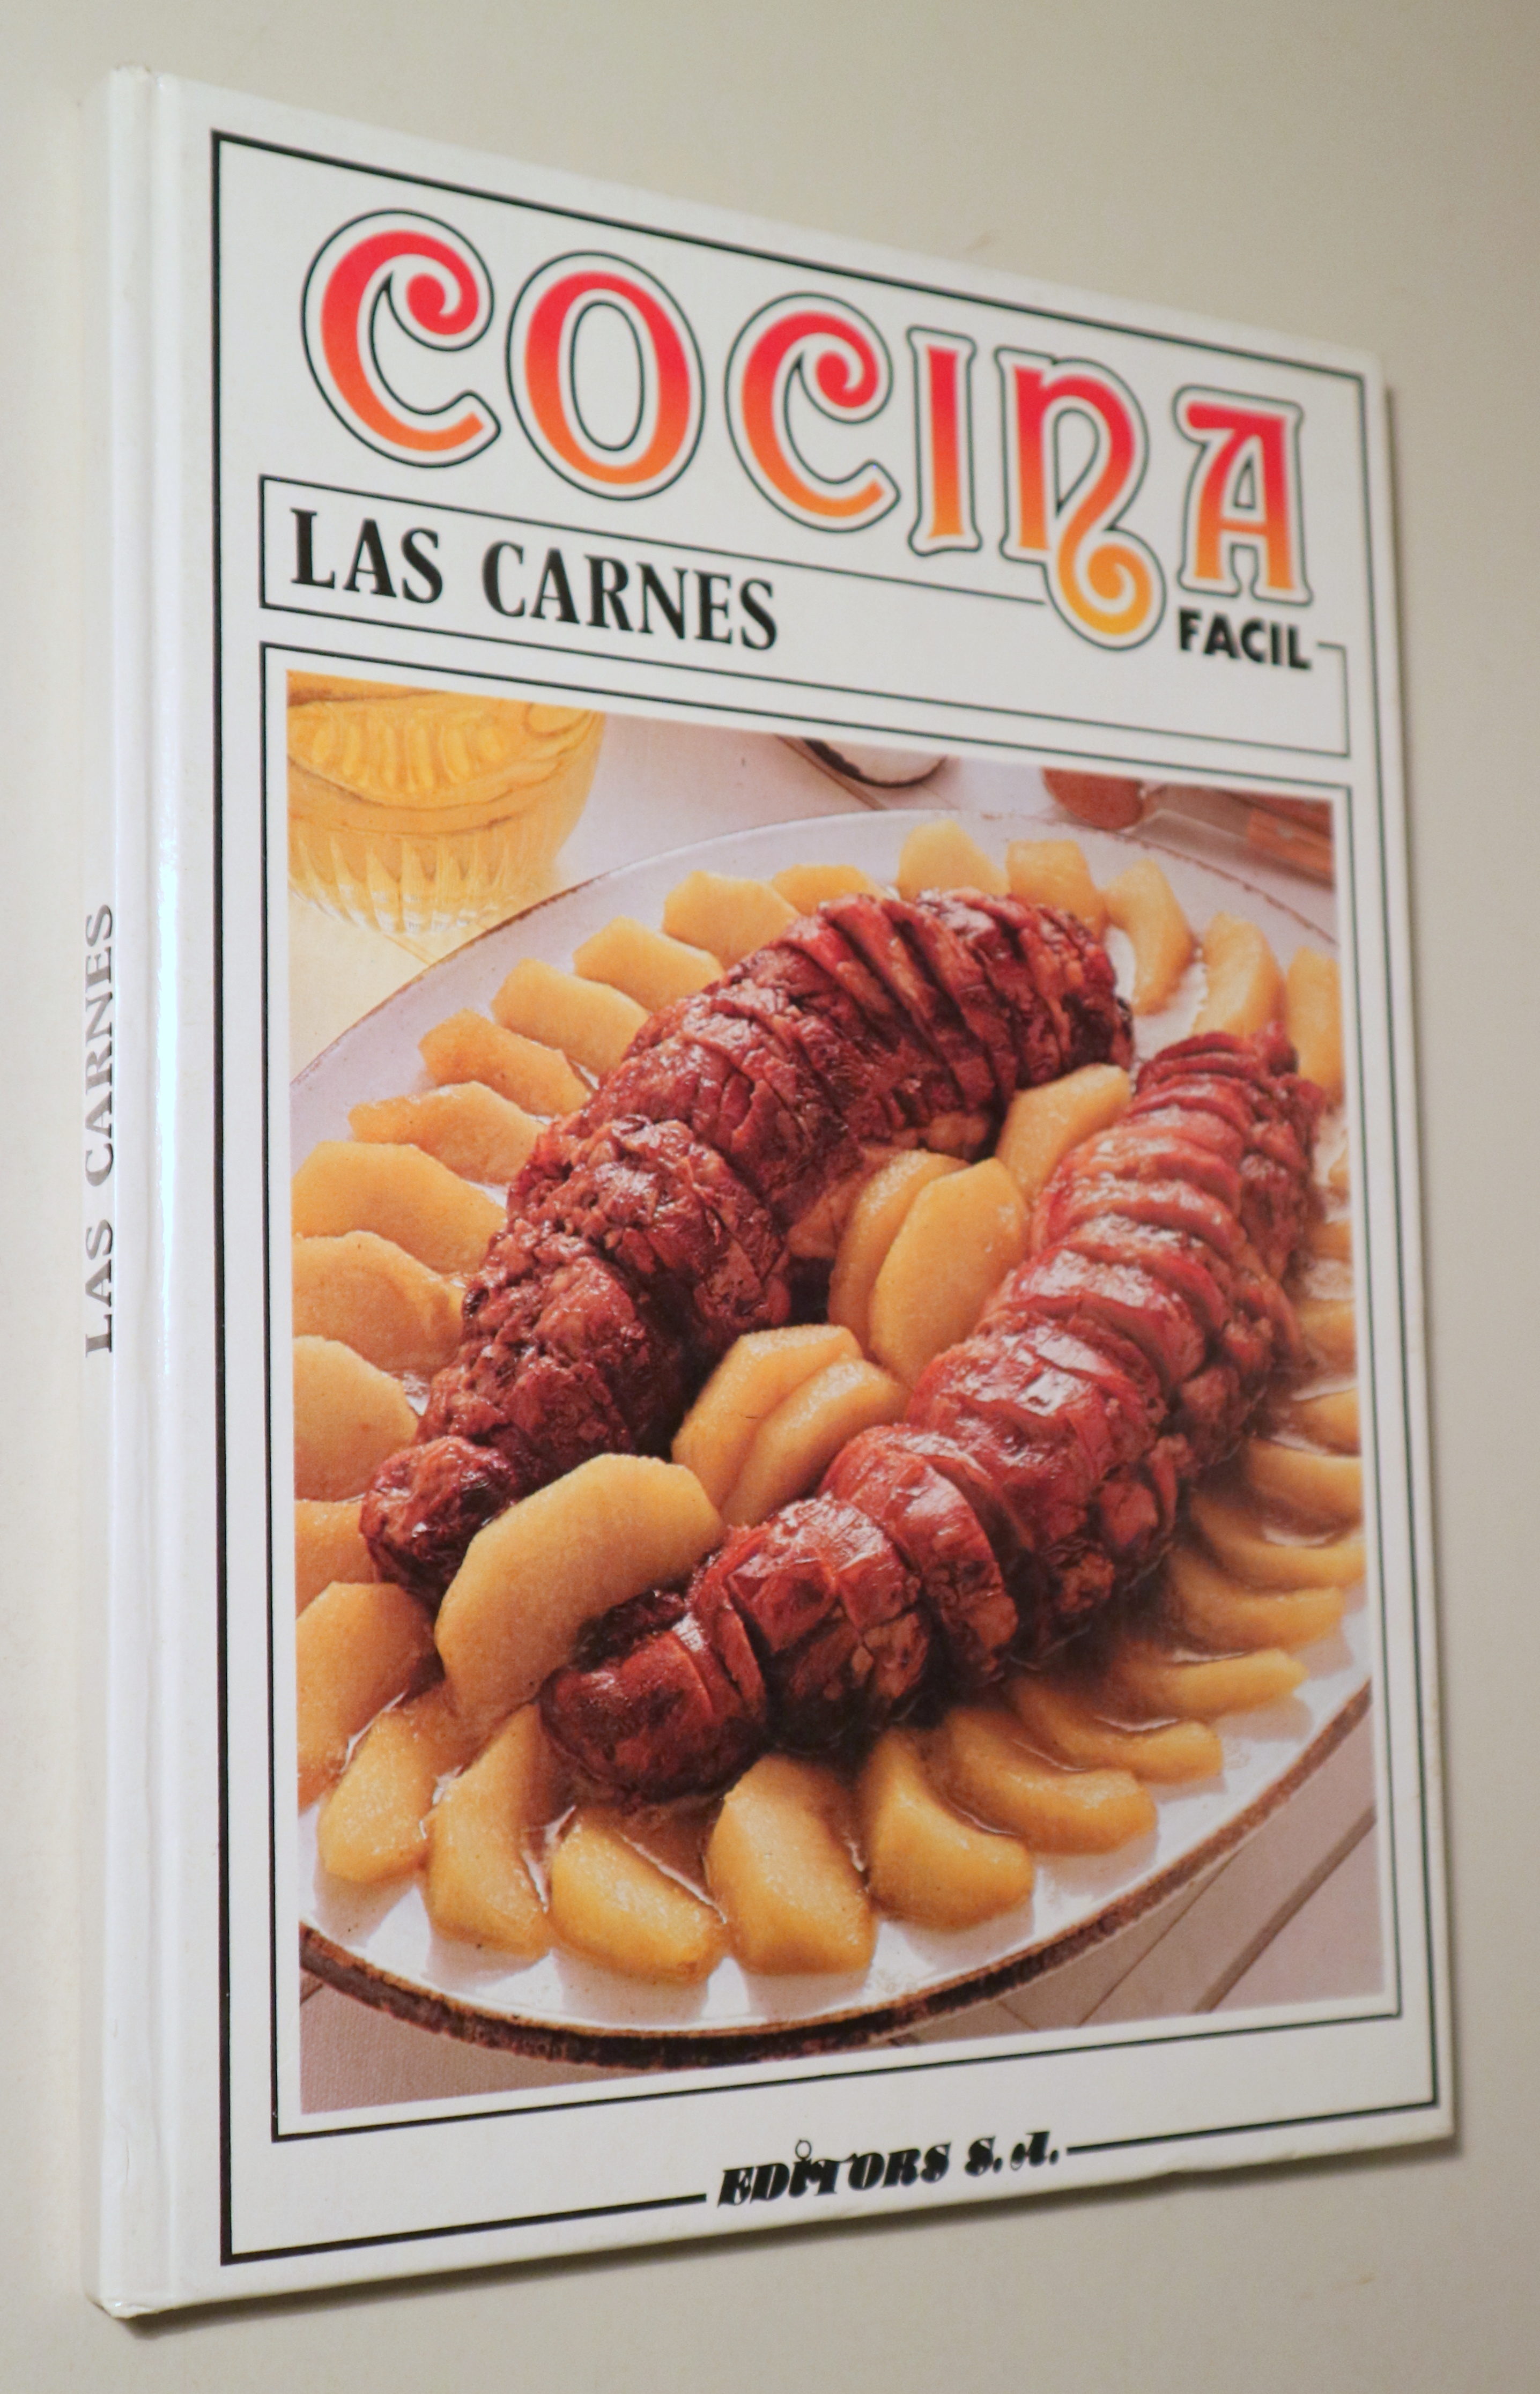 COCINA FÁCIL. Las carnes - Barcelona 1985 - Ilustrado